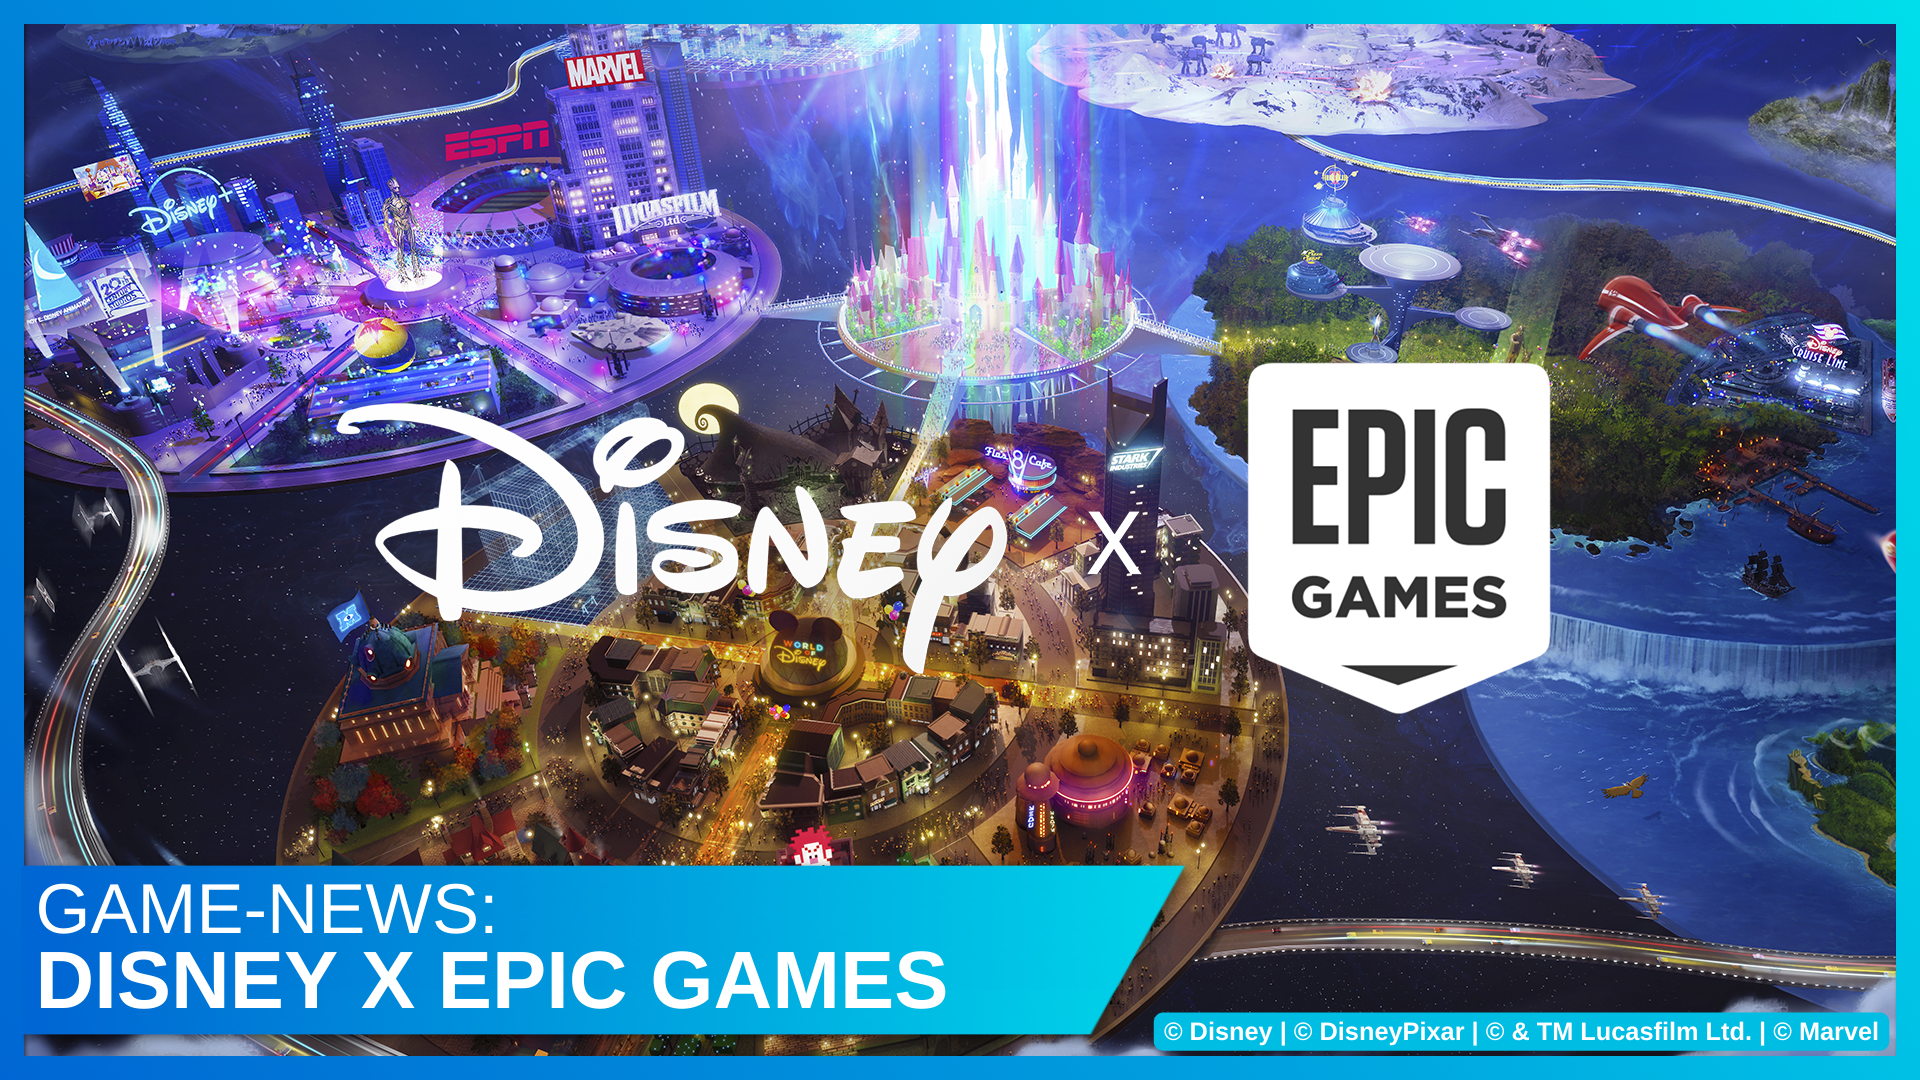 Videospiele: Disney investiert $ 1,5 Milliarden in Epic Games (Fortnite) und kündigt enge Zusammenarbeit an